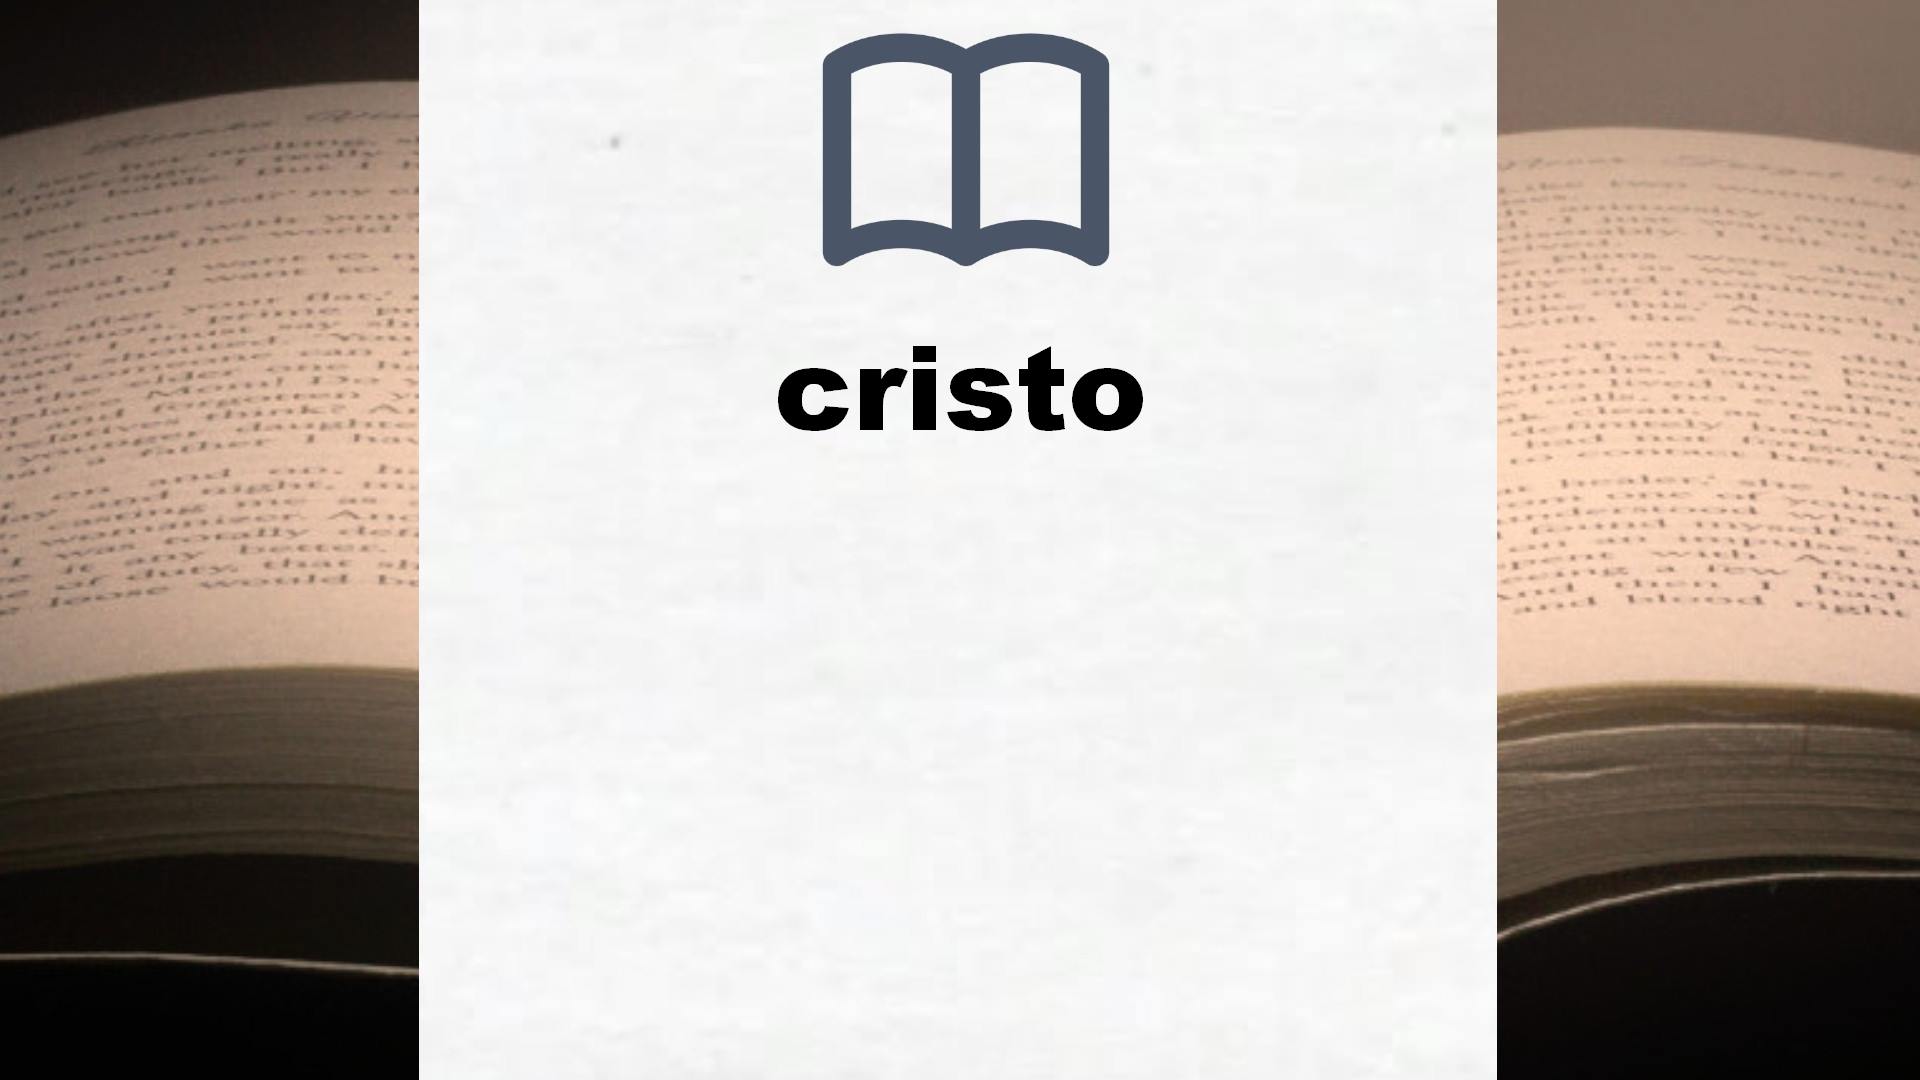 Libros sobre cristo